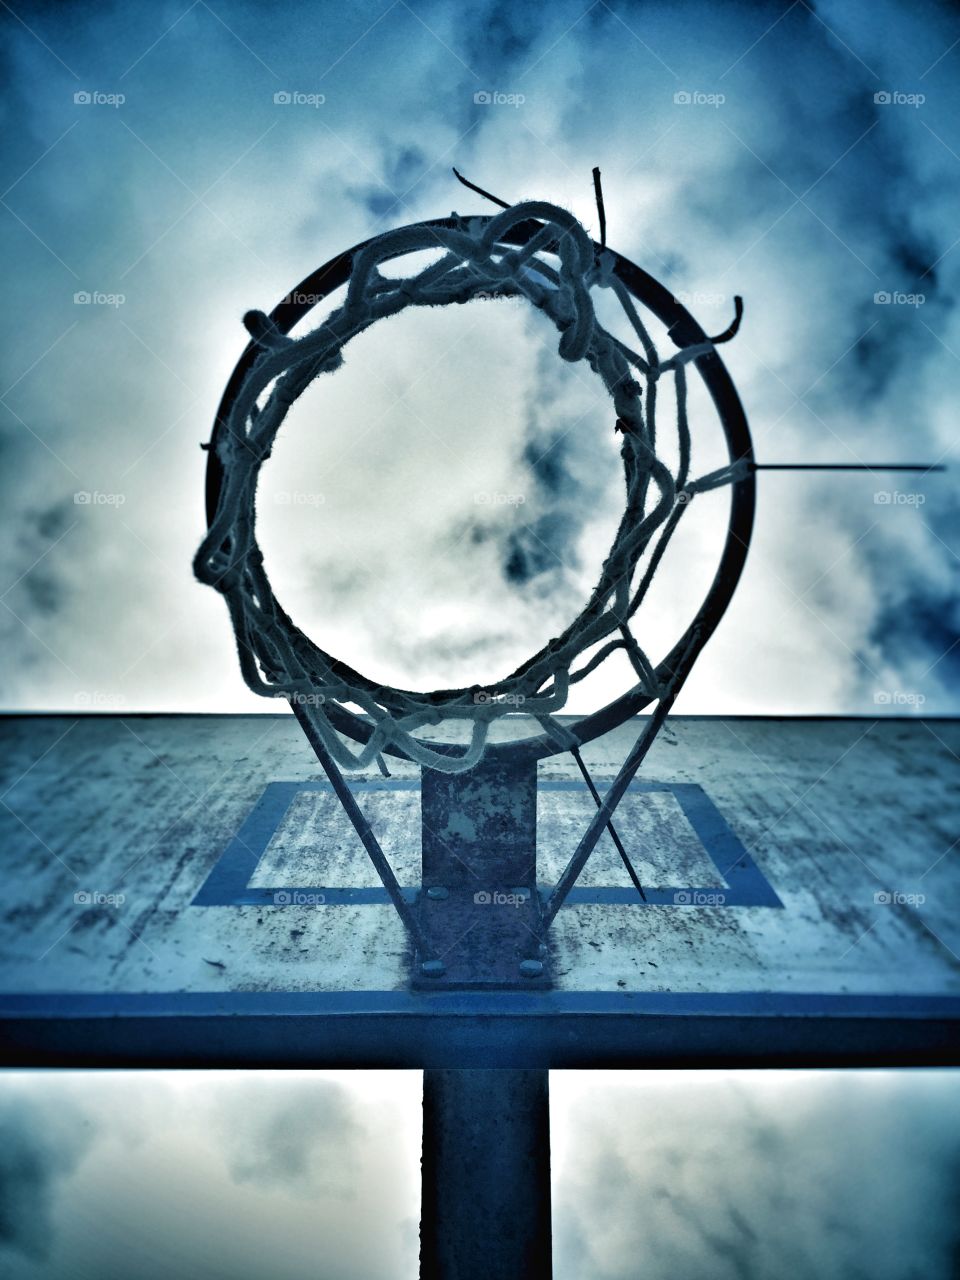 Basket ball
